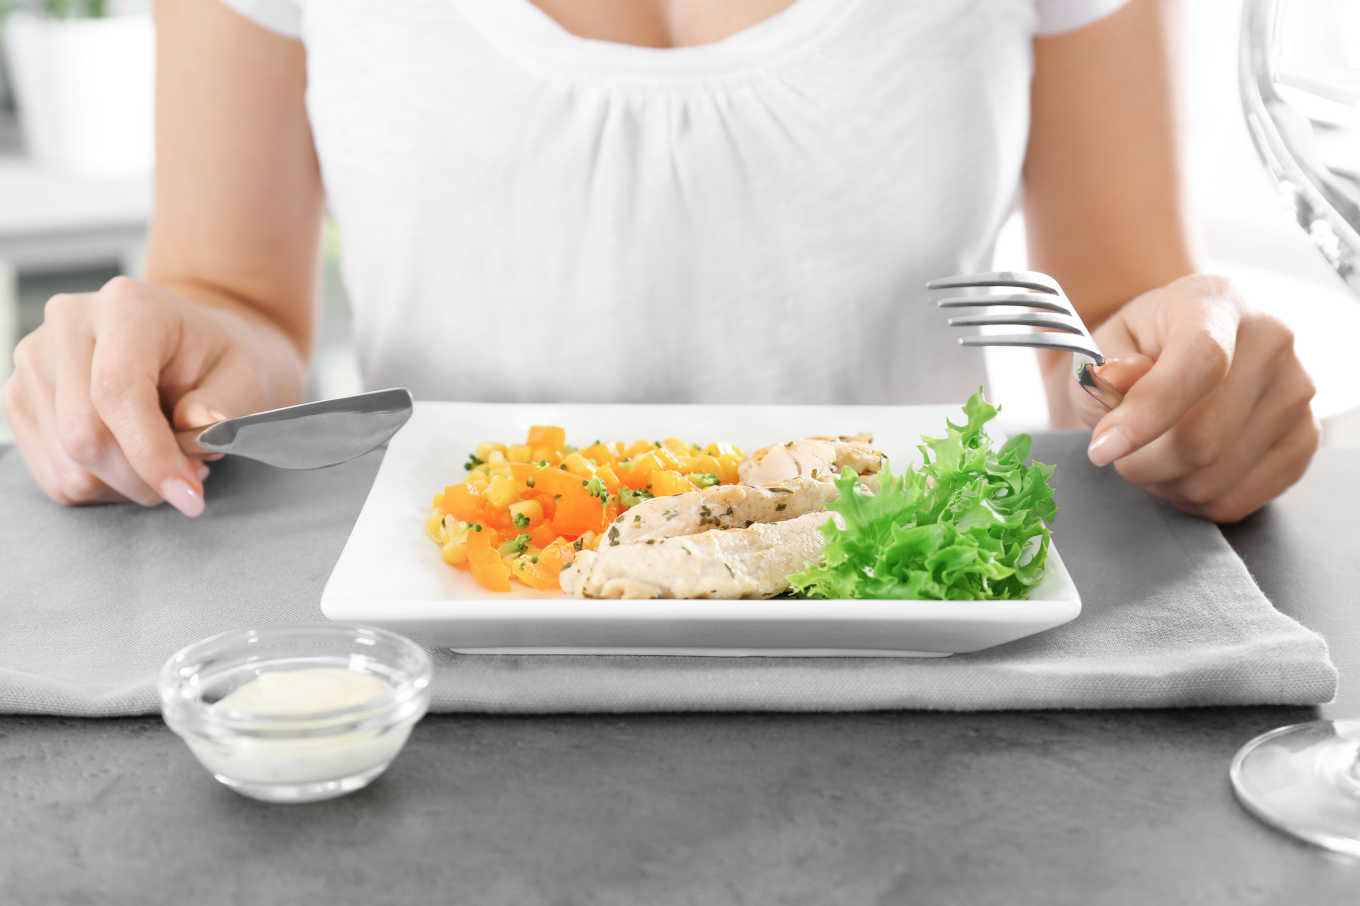 5 ideias fáceis de preparar refeições saudáveis ​​para facilitar sua vida enquanto perde peso